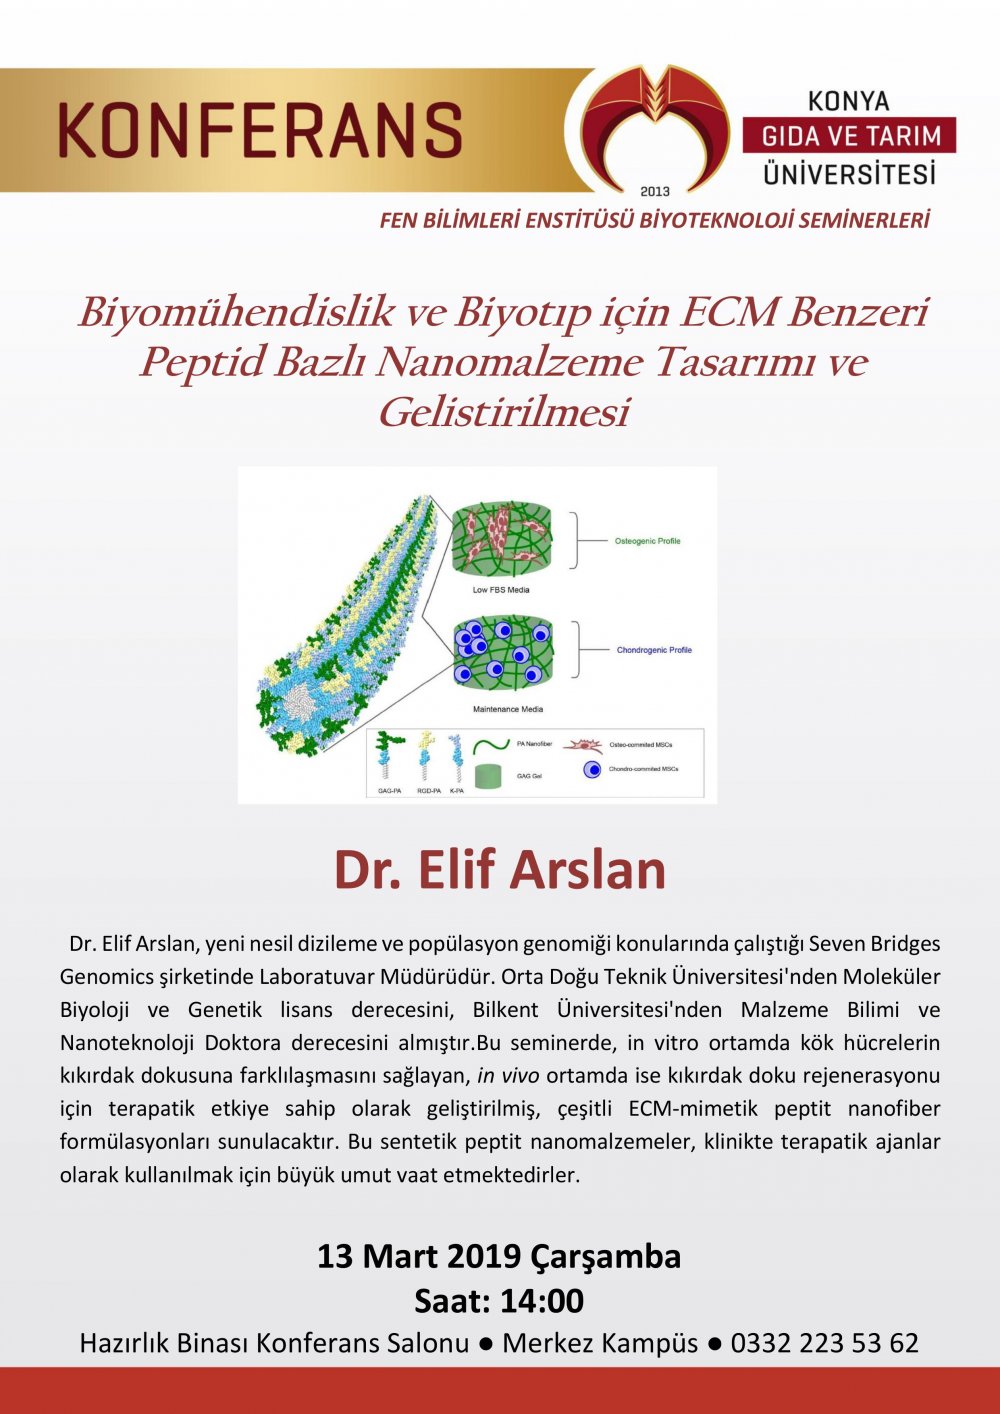 Biyomühendislik ve Biyotıp için ECM Benzeri Peptid Bazlı Nanomalzeme Tasarımı ve Geliştirilmesi / 13 Mart Çarşamba 14:30